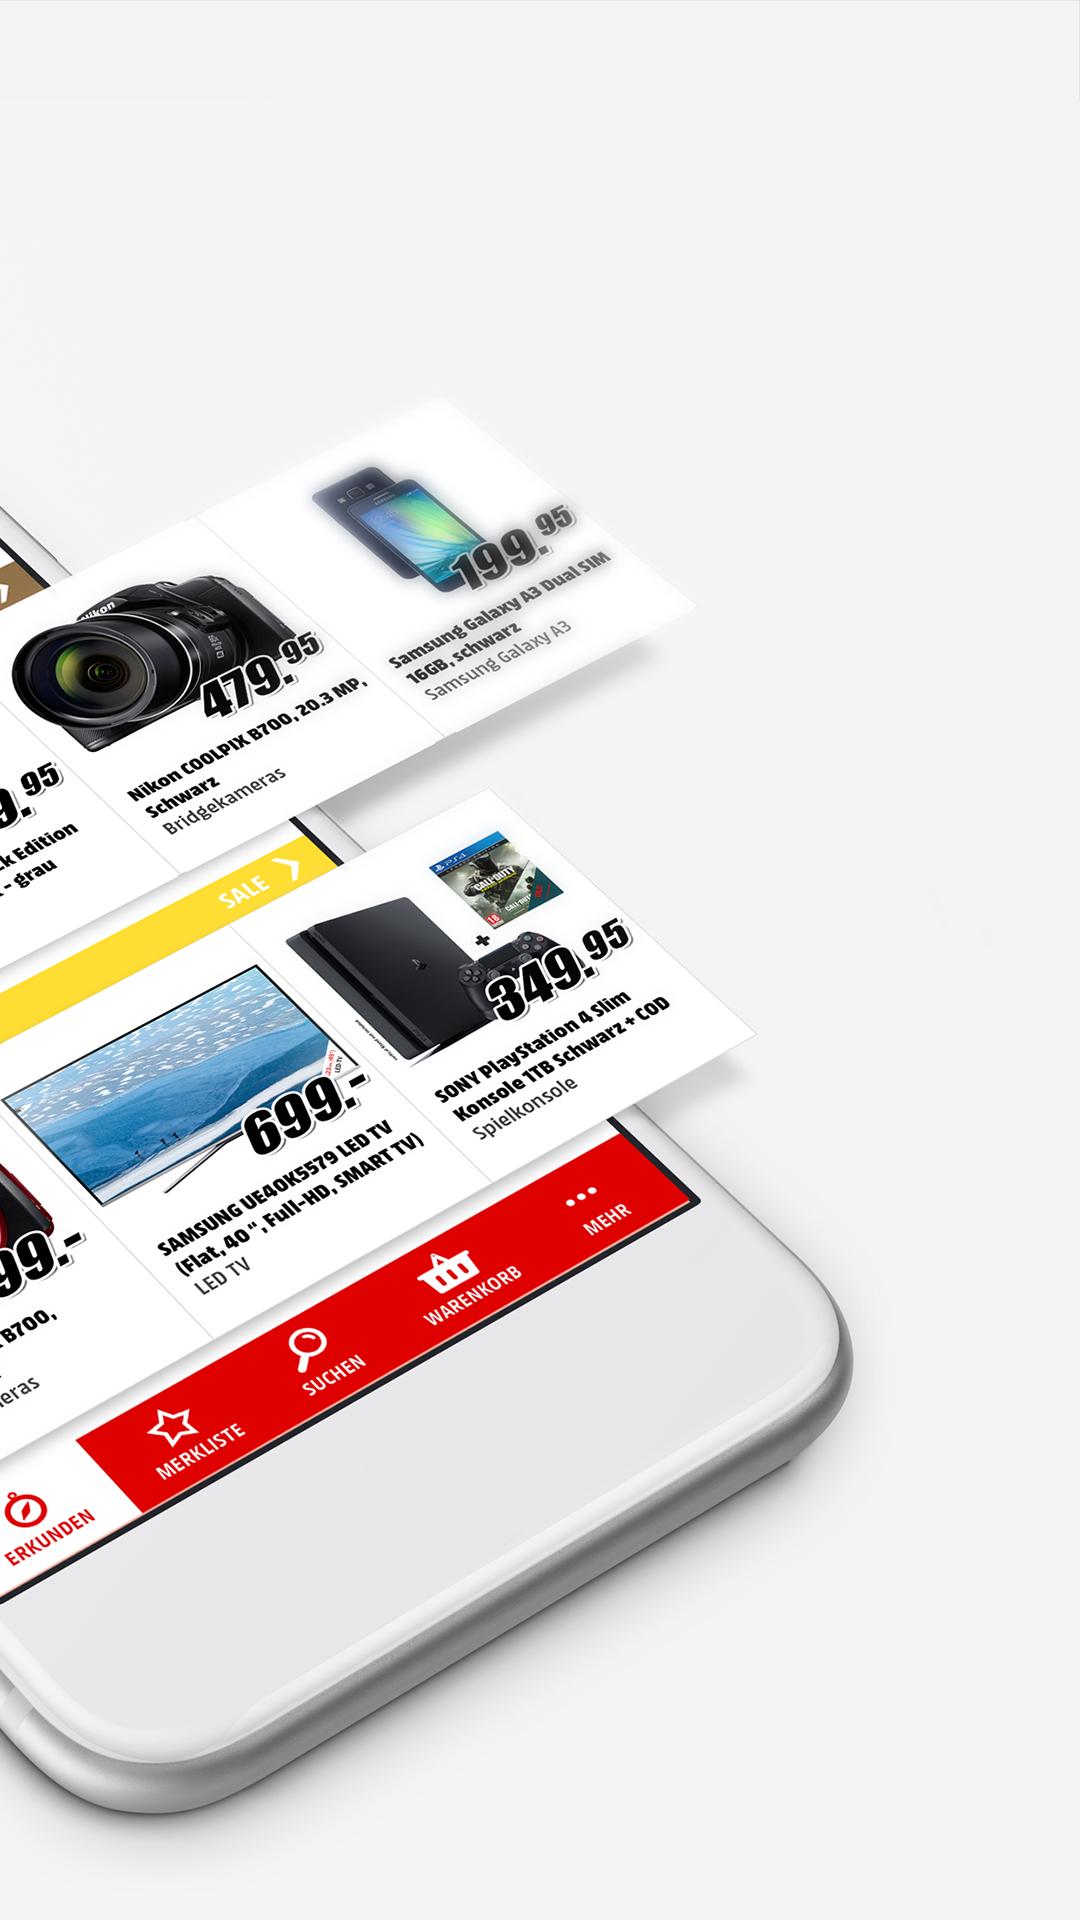 Media Markt Schweiz for Android - APK Download